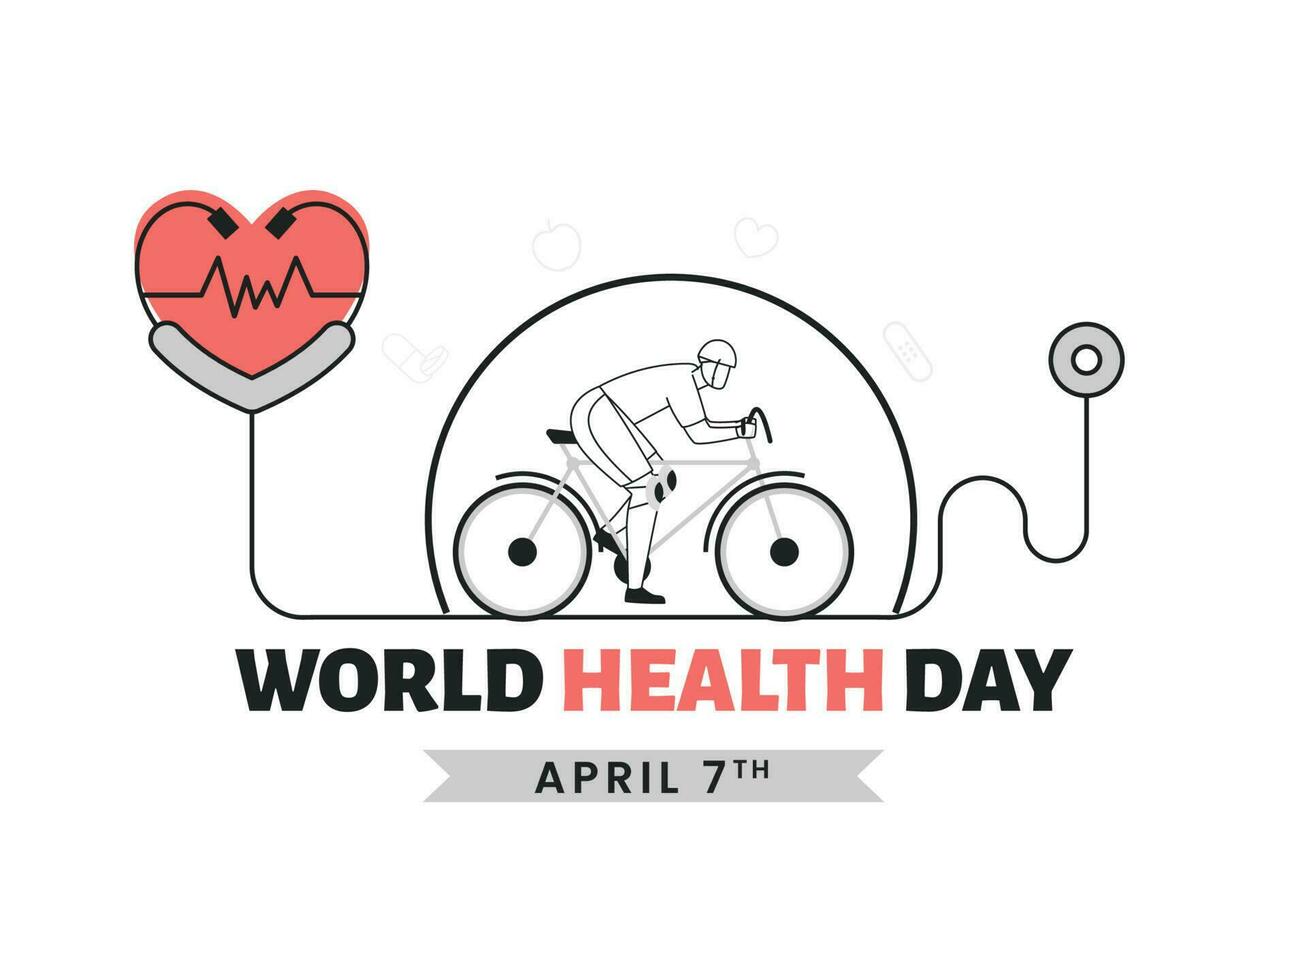 7 .. April, Welt Gesundheit Tag Konzept mit Gekritzel Stil Mann Radfahren und Herzschlag Untersuchung durch Stethoskop auf Weiß Hintergrund. vektor